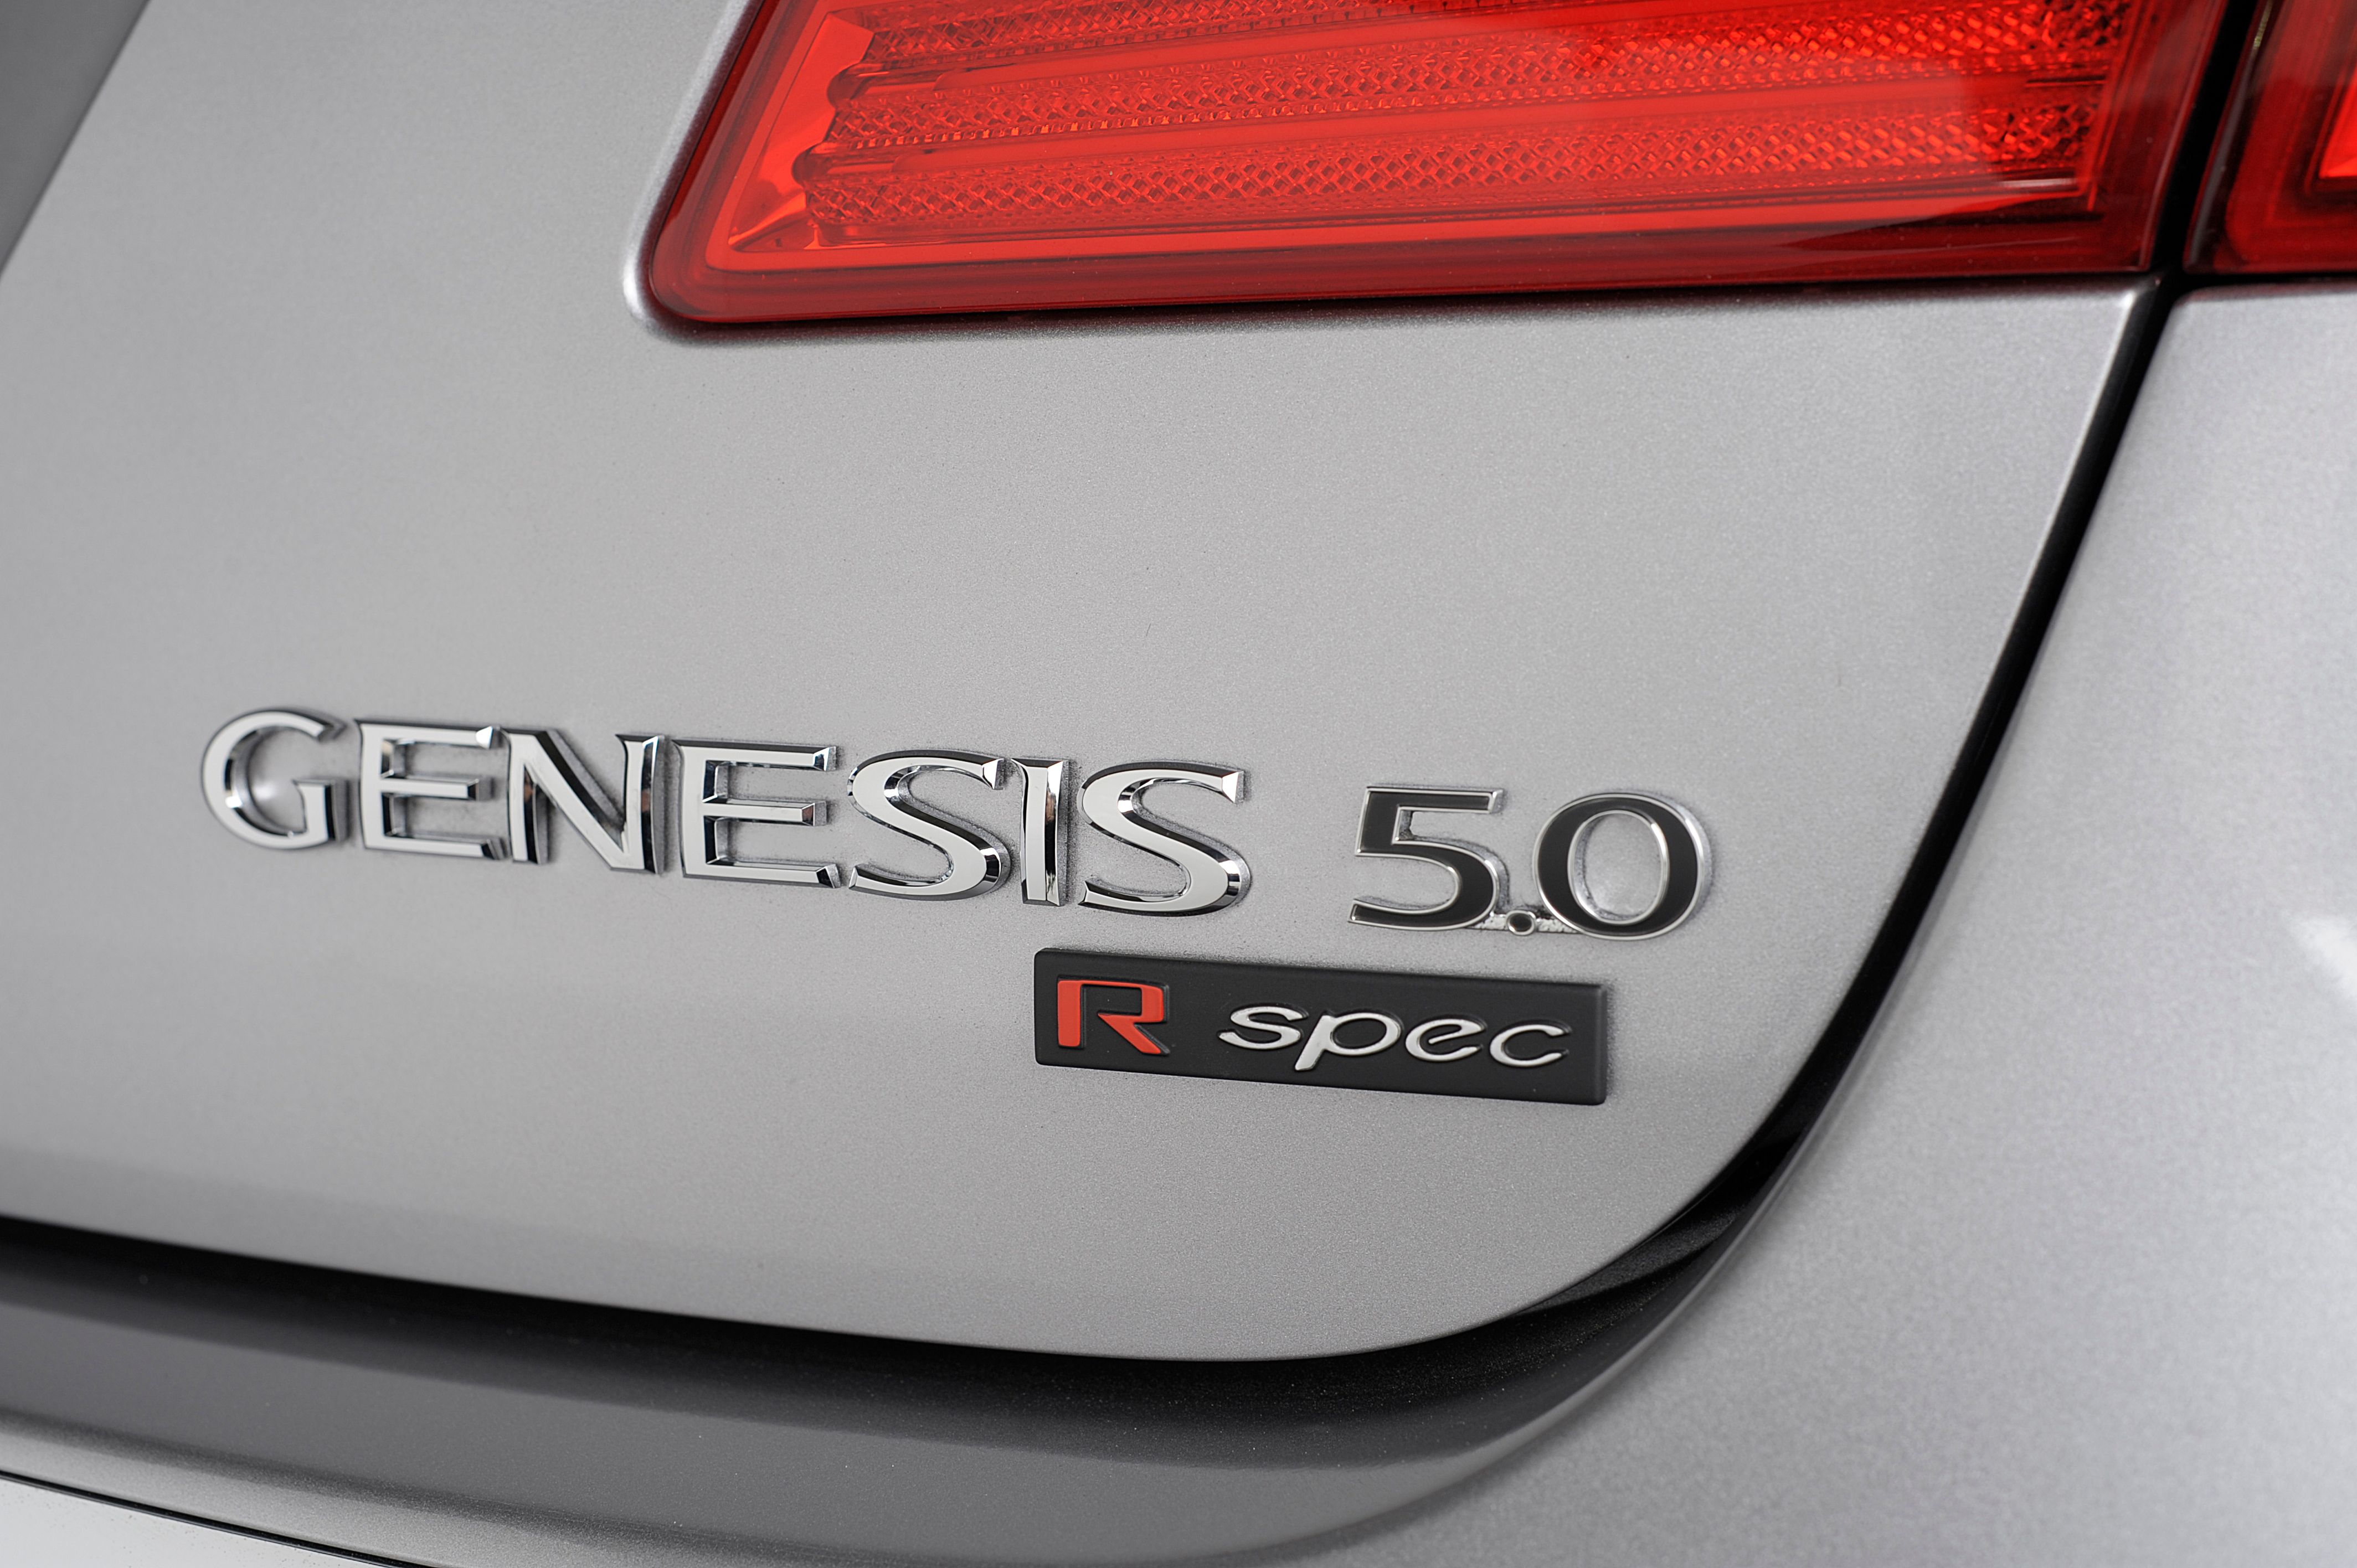 2013 Hyundai Genesis Sedan